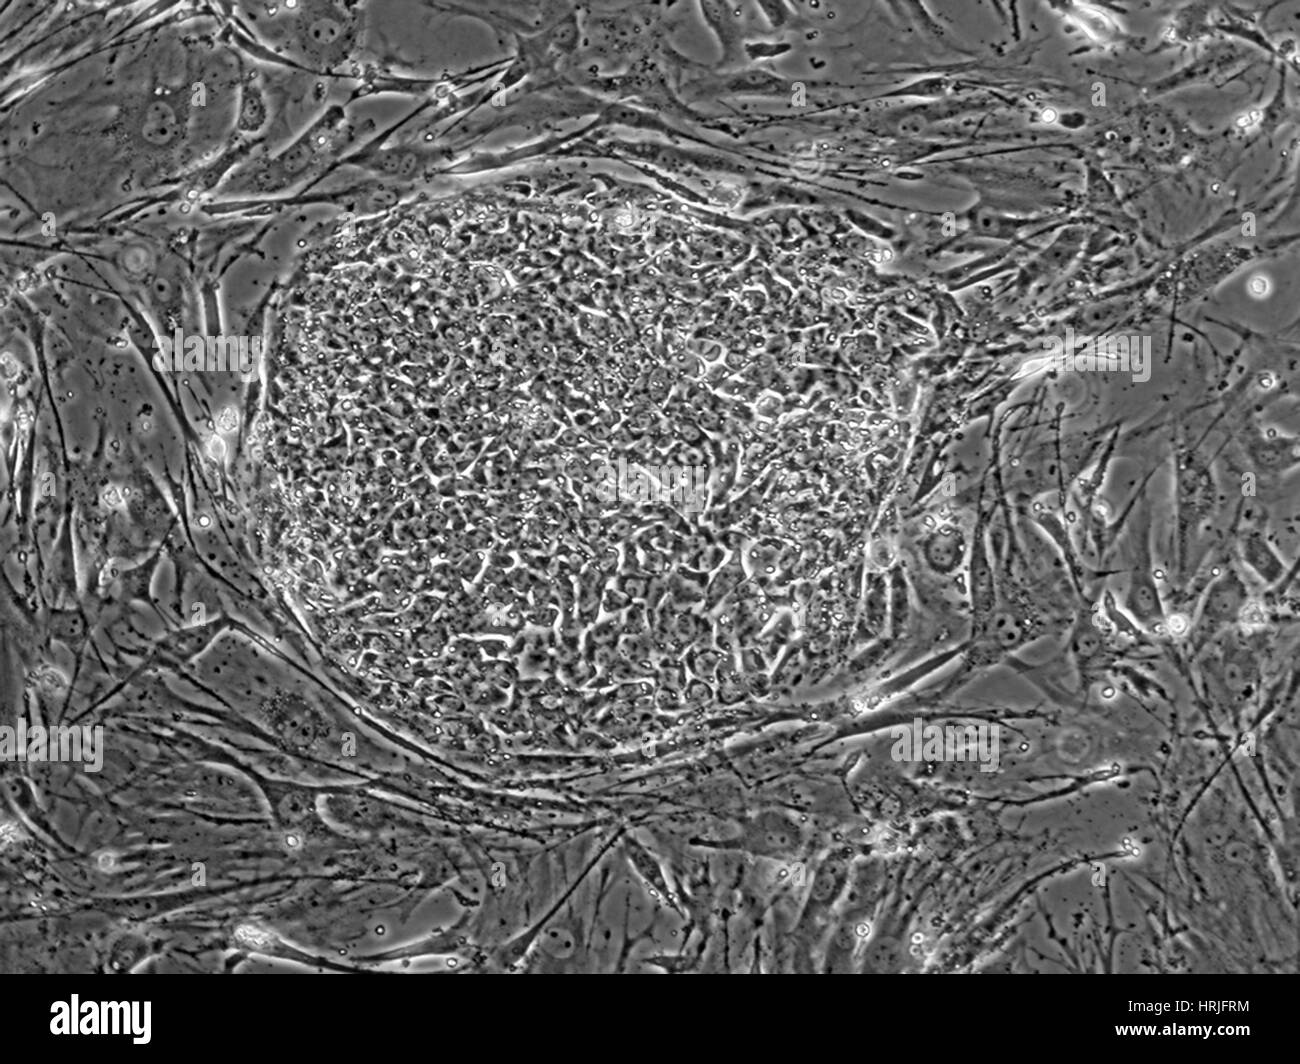 Human Embryonic Stem Cell Line SA01 Stock Photo